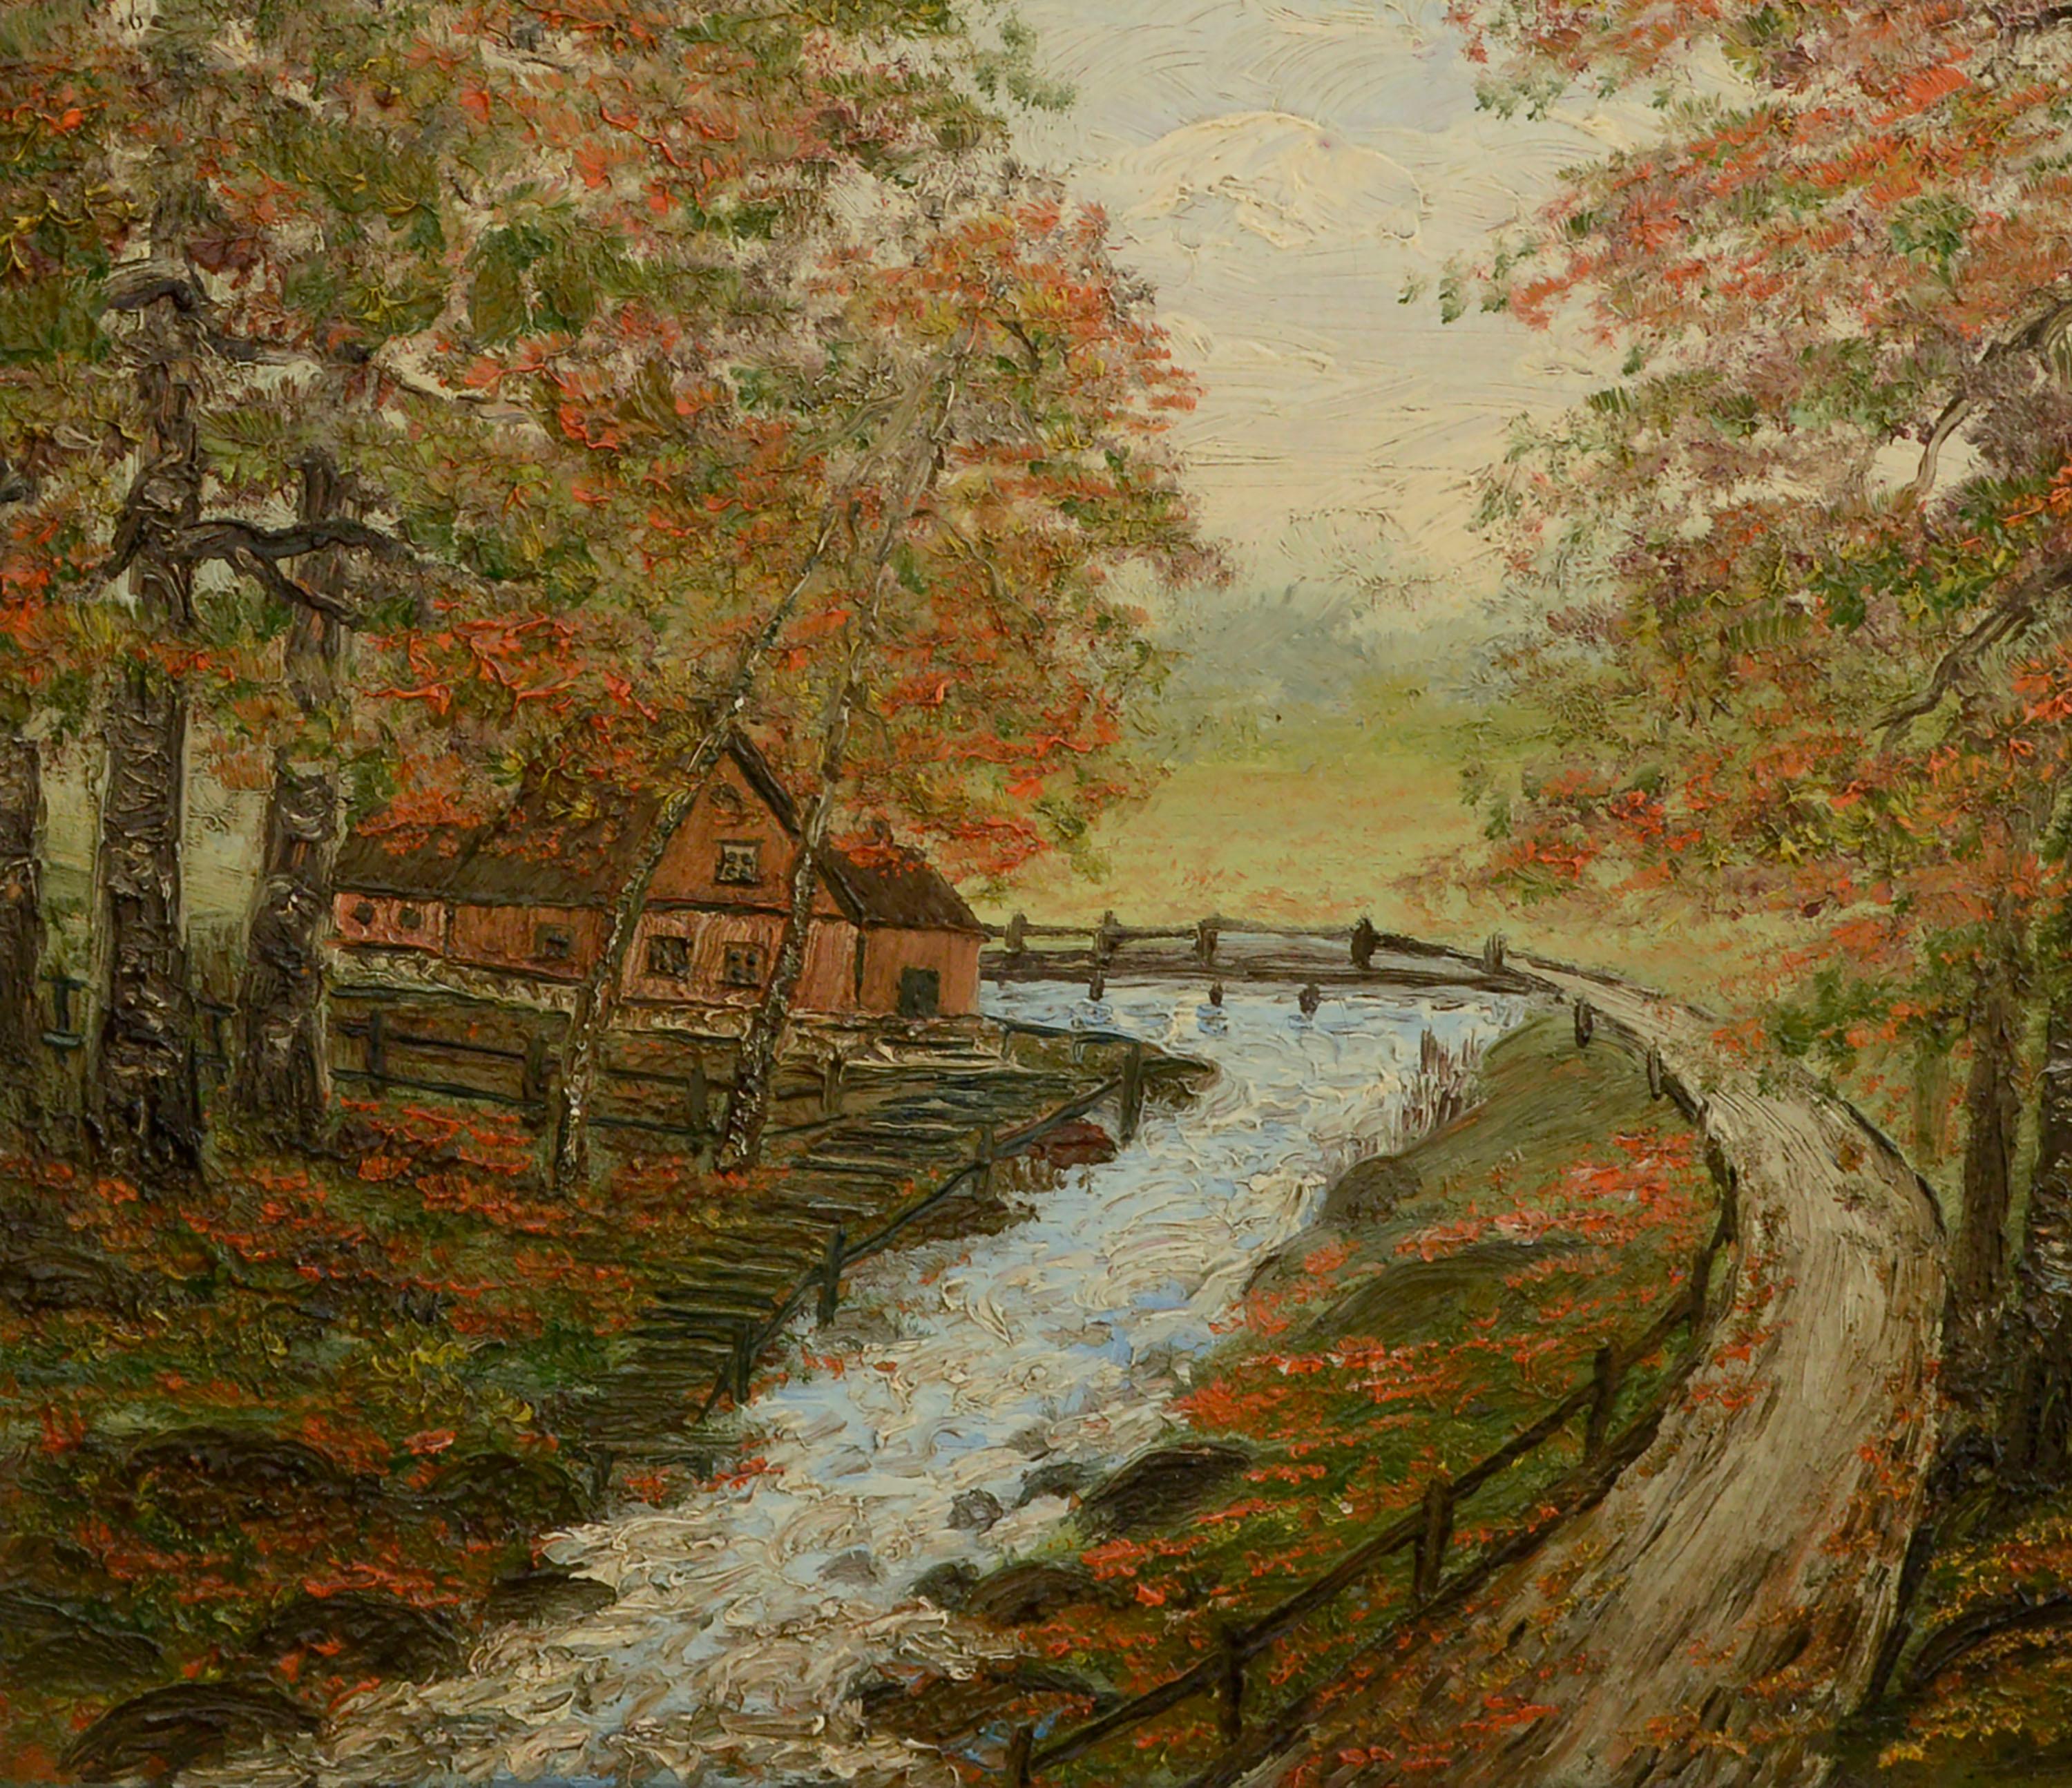 Landhaus im Herbst, Mid-Century-Wohnhaus in der Waldlandschaft  (Amerikanischer Impressionismus), Painting, von Thelma Connell